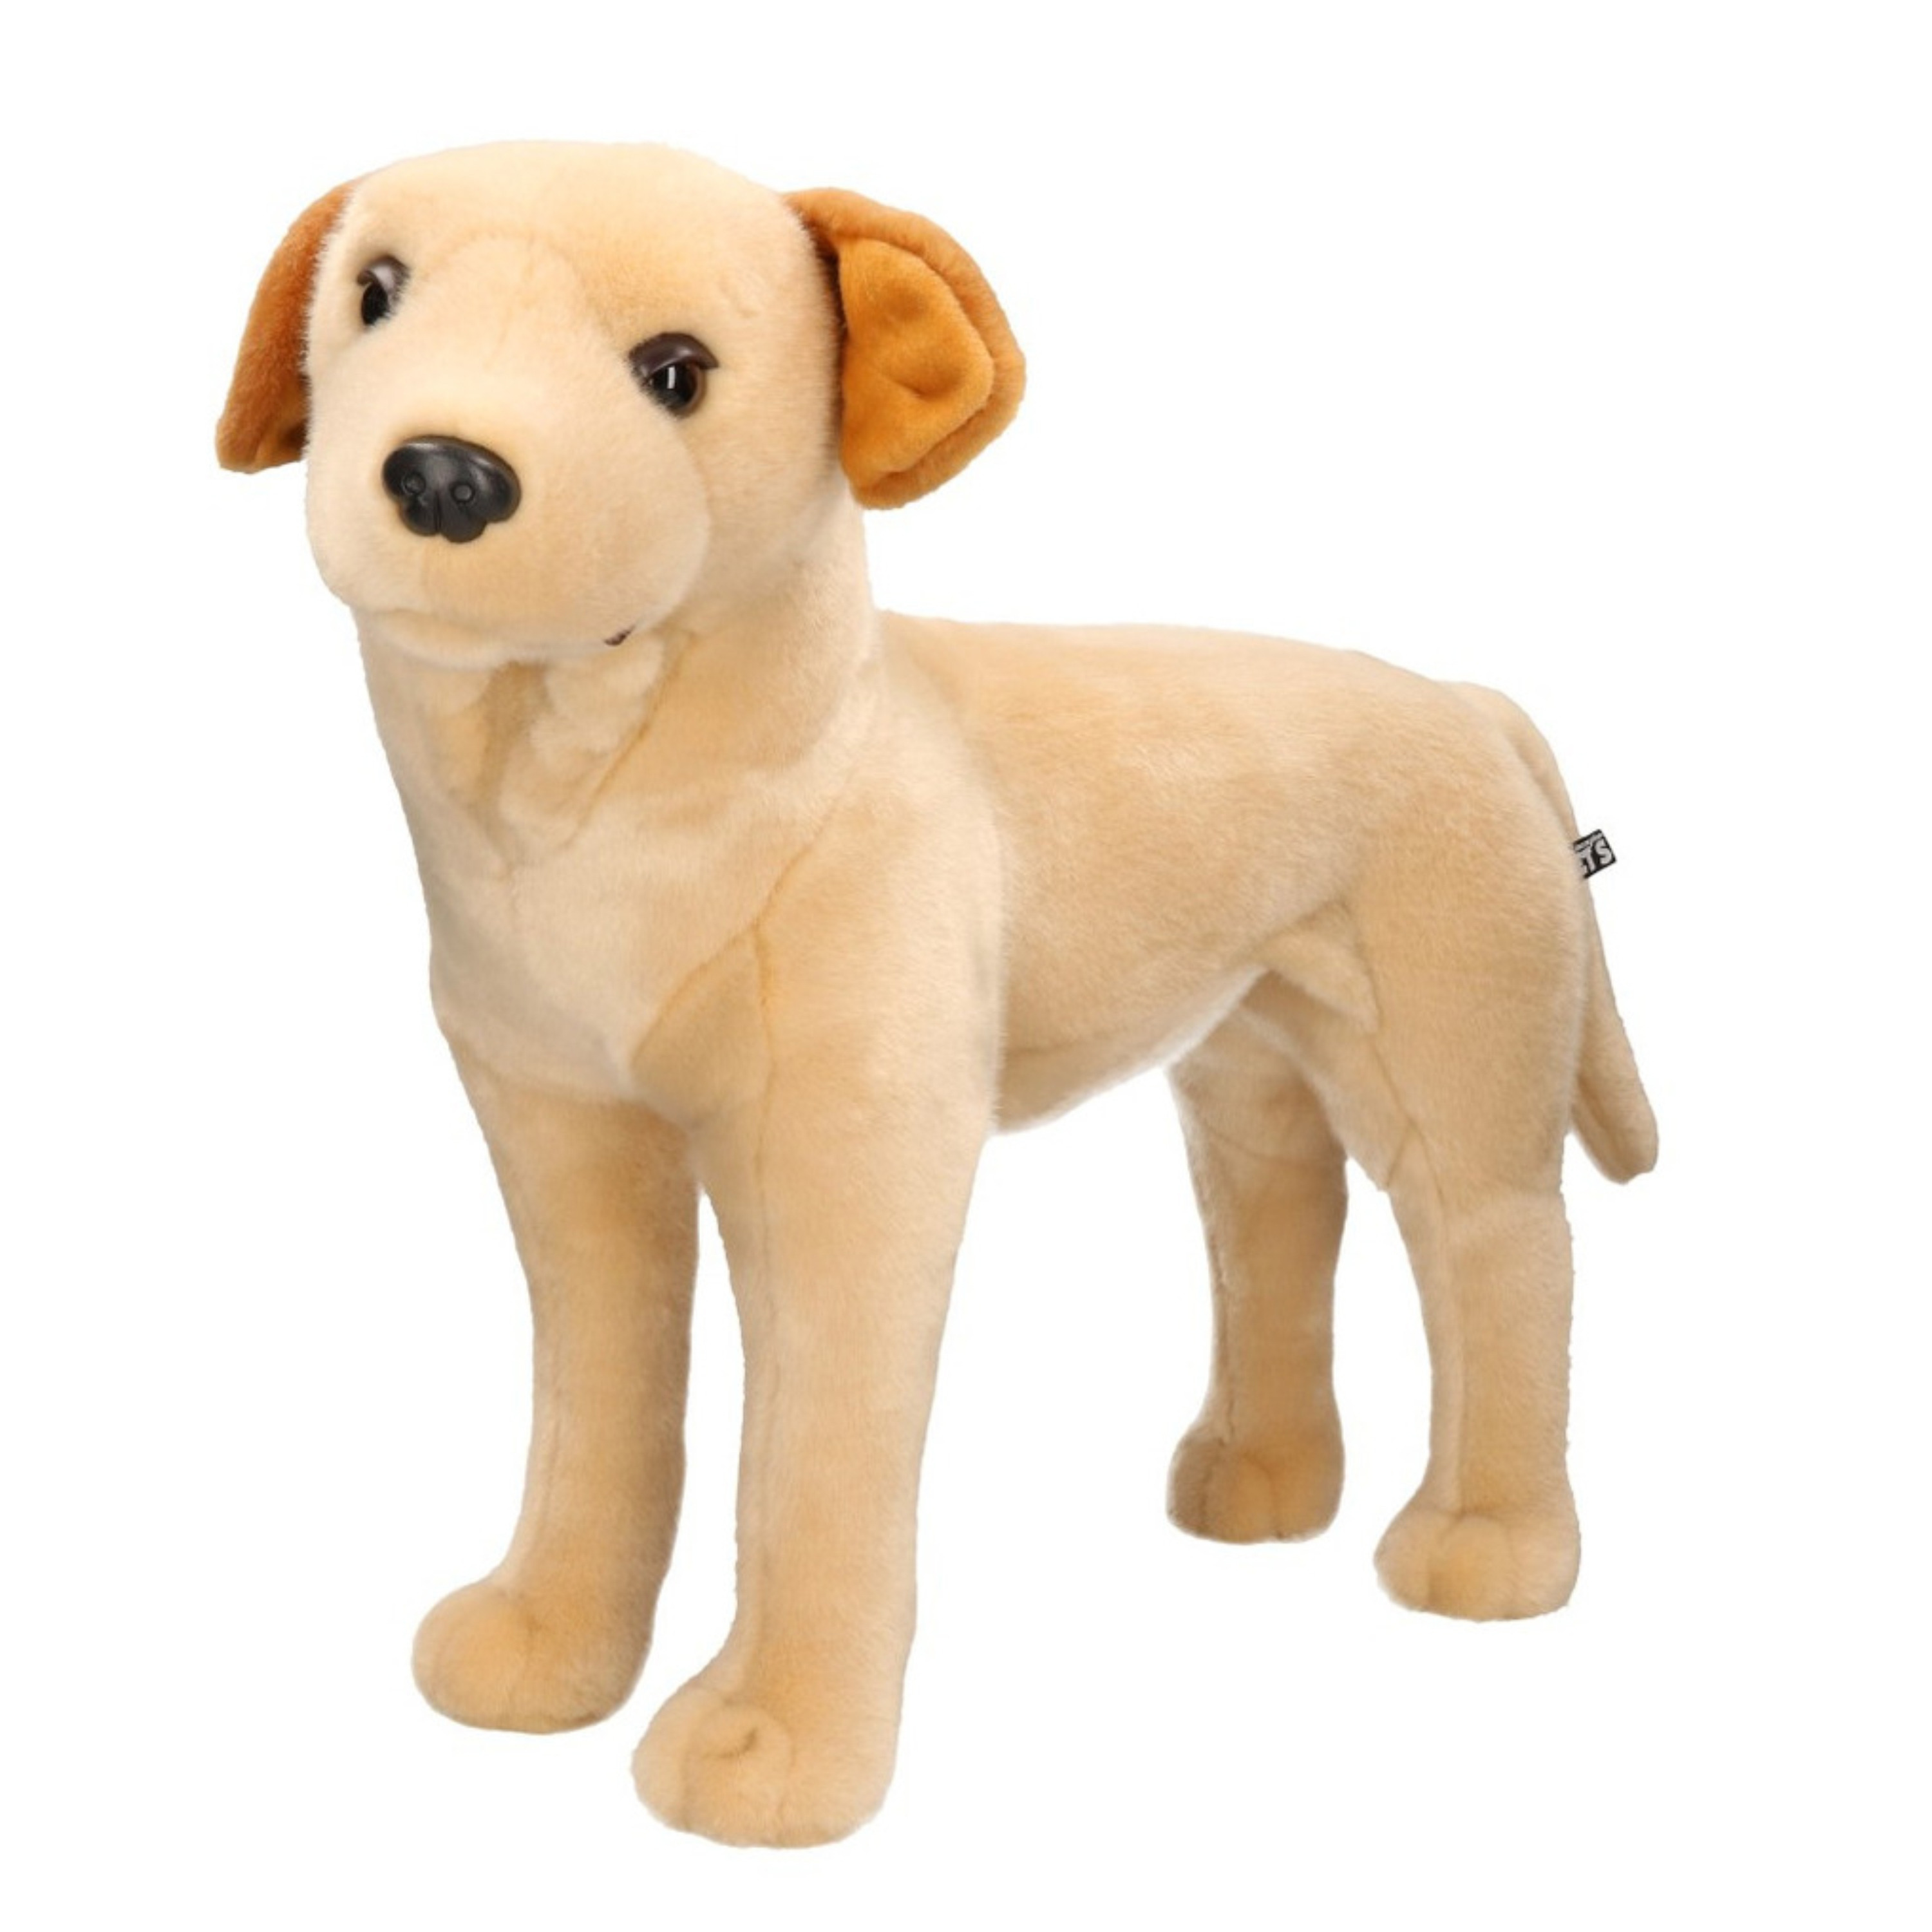 XL Knuffel Labrador hond blond 53 cm knuffels kopen